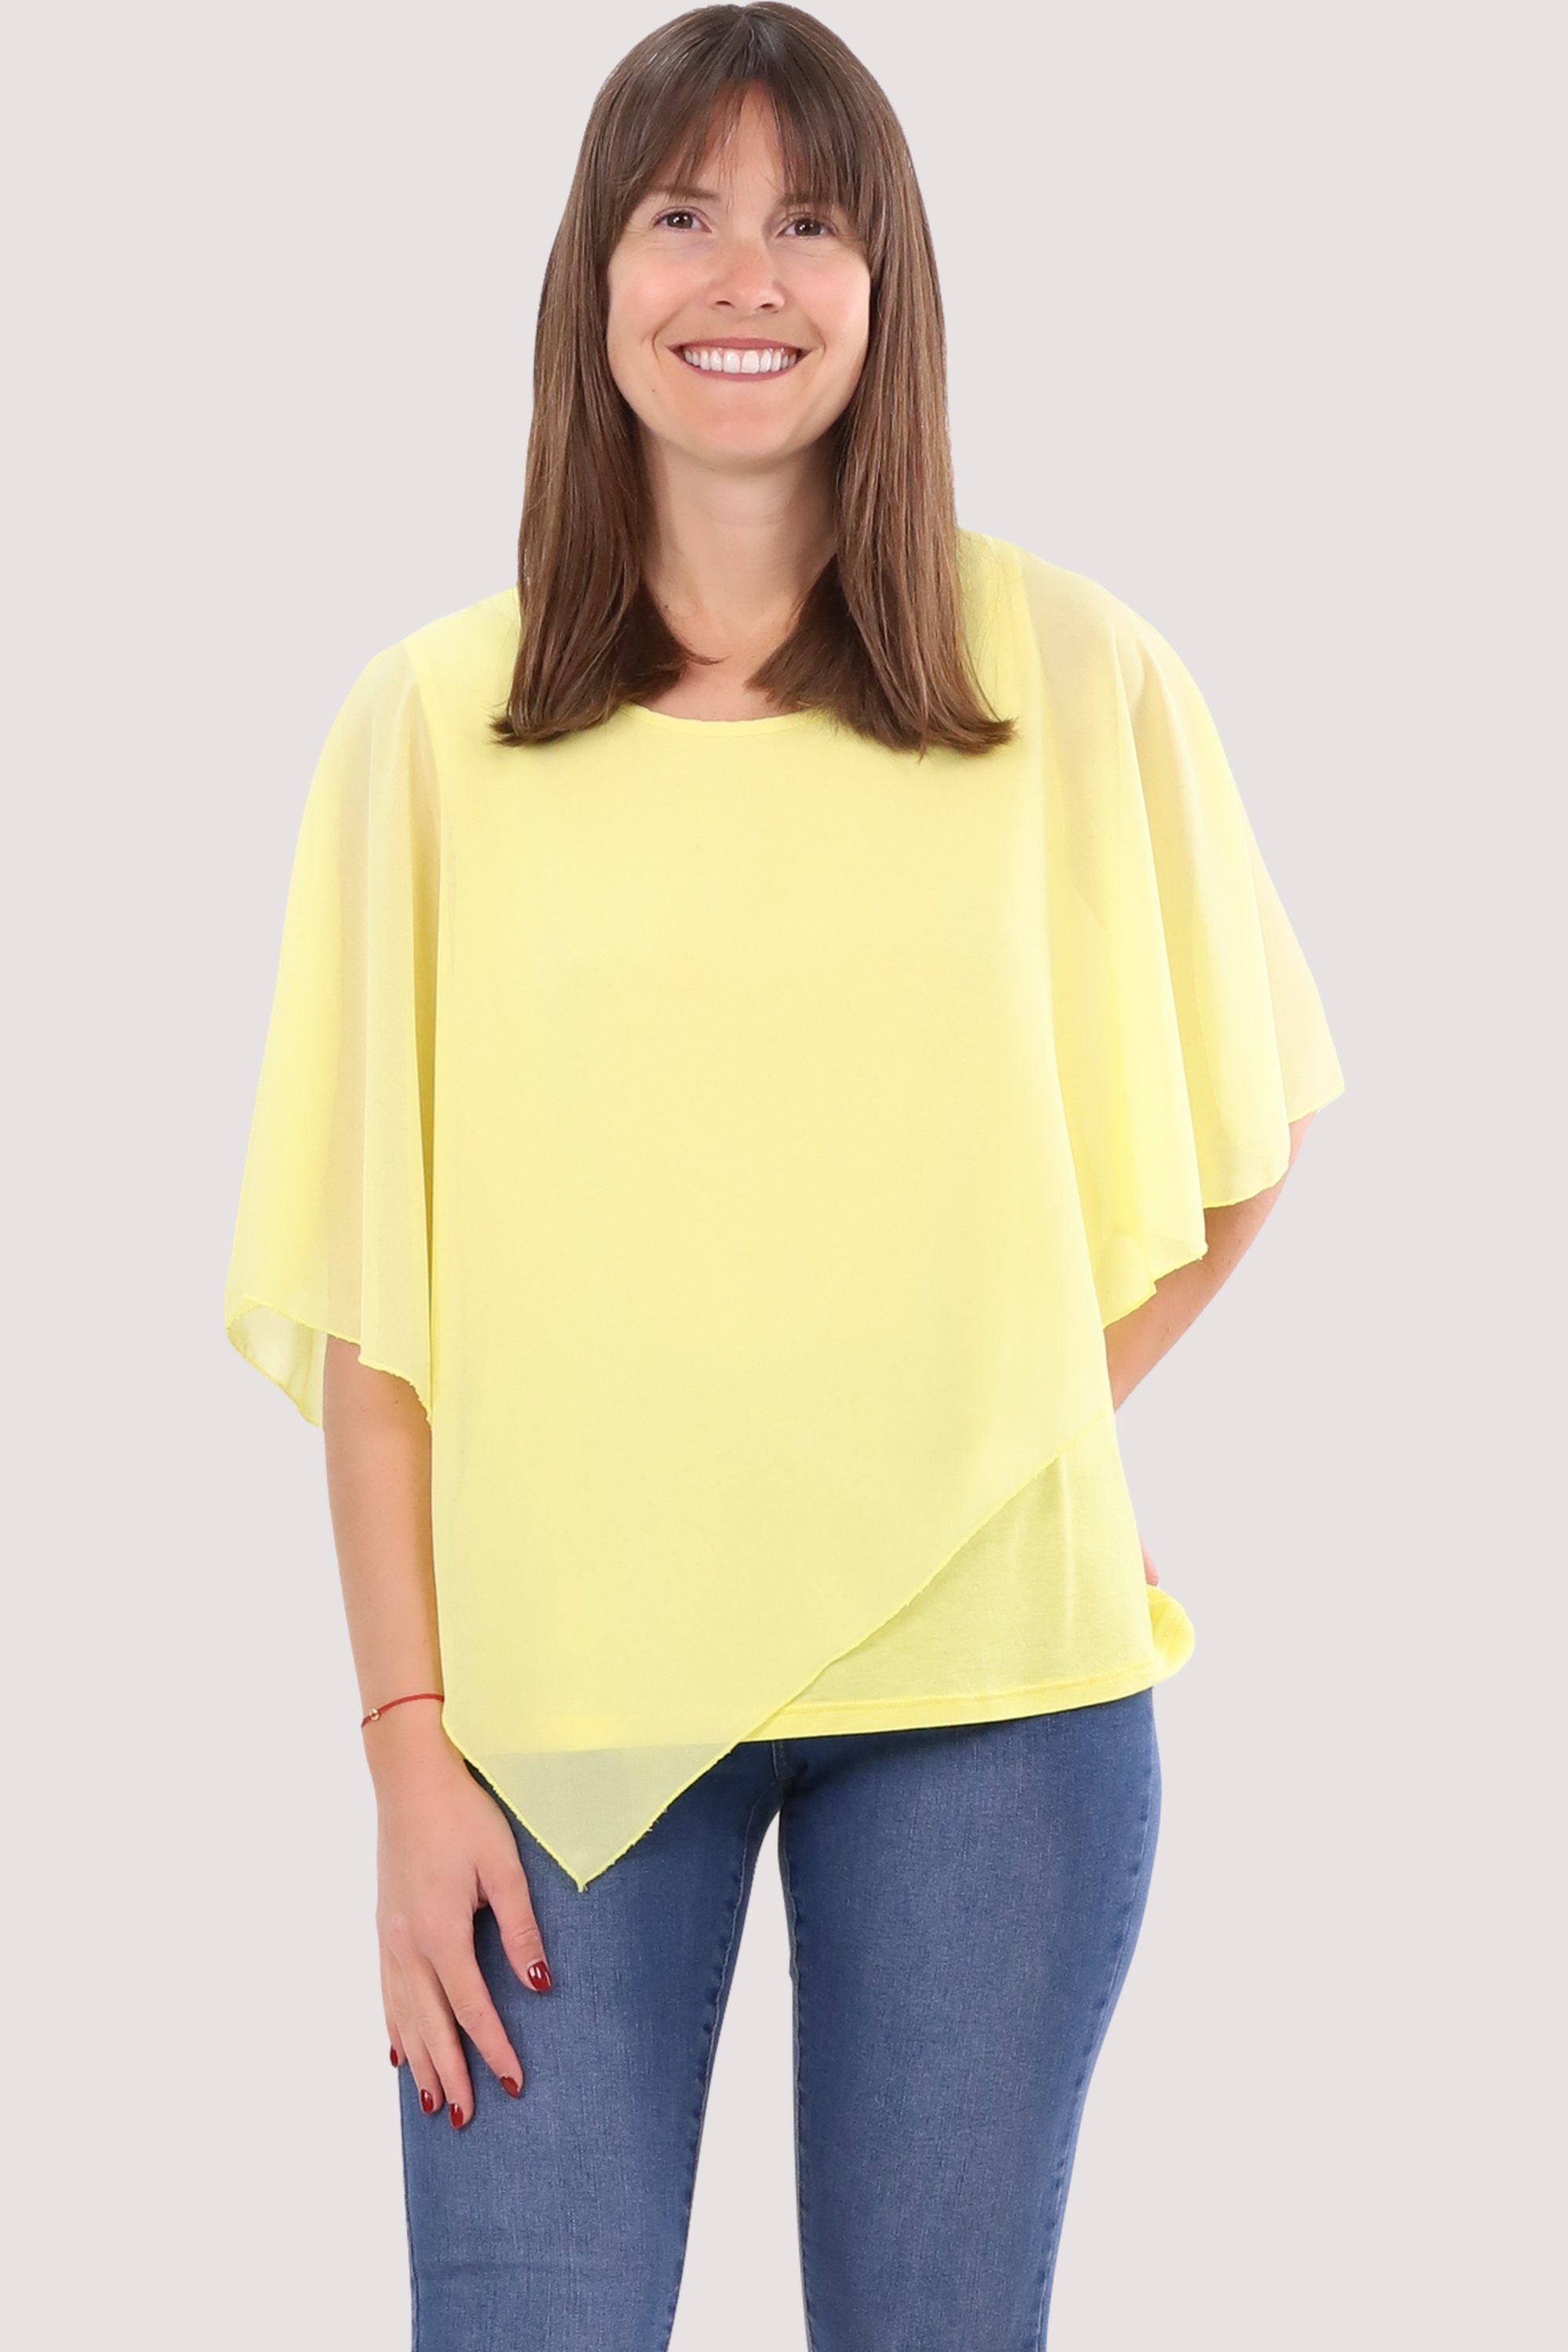 malito more than fashion Chiffonbluse 10732 Schlupfbluse Blusenshirt asymmetrisch geschnitten Einheitsgröße gelb